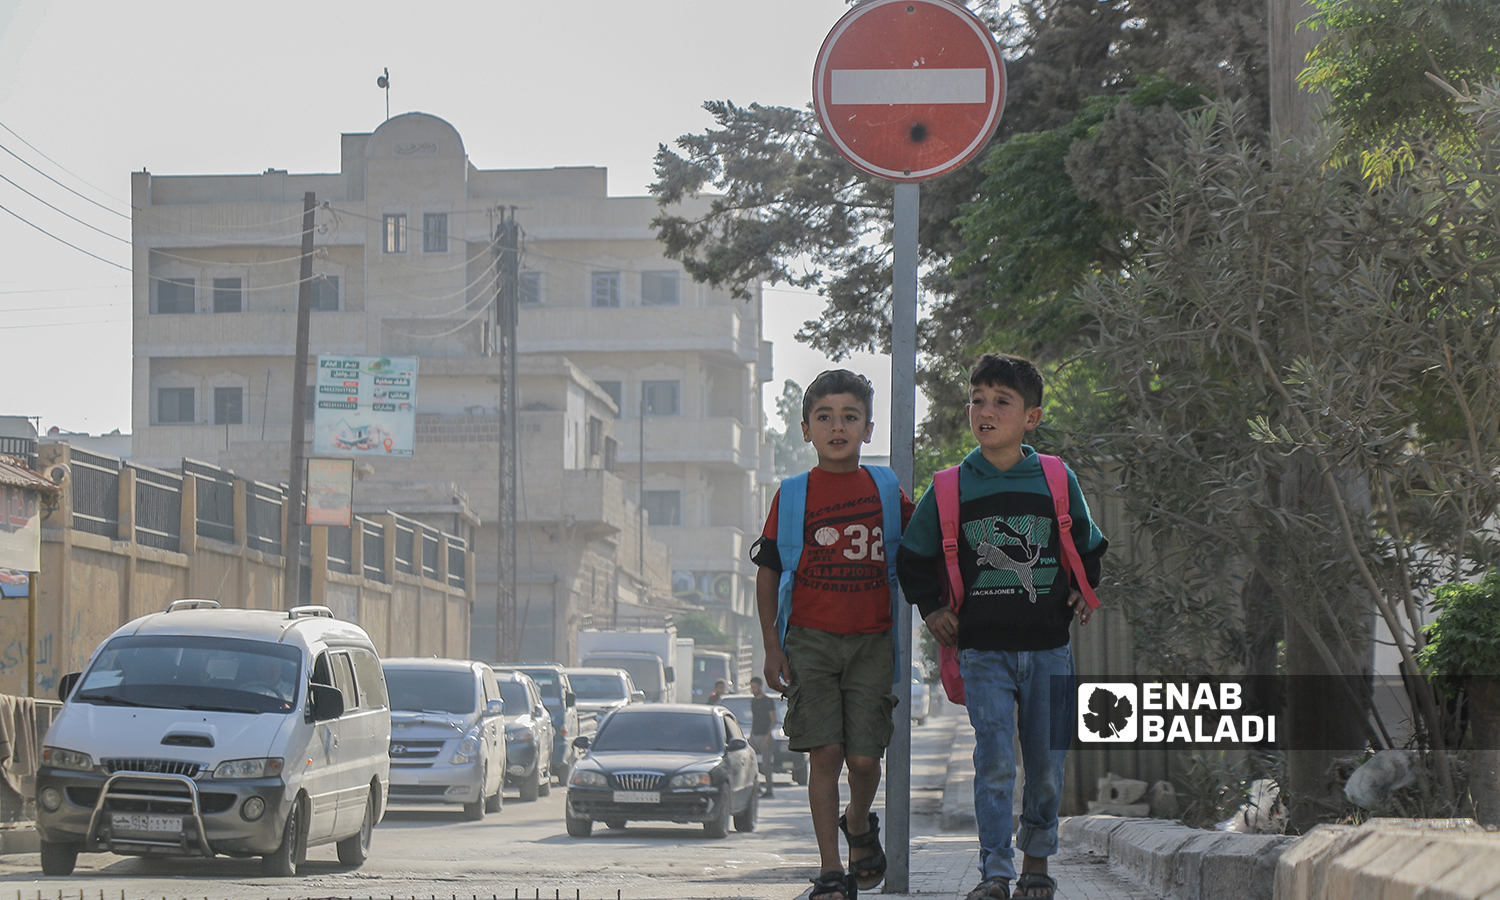 طالبان في المرحلة الابتدائية يتجهان إلى المدرسة صباحًا مع بداية العام الدراسي الجديد في ريف حلب الشمالي - مدينة اعزاز - 22 أيلول 2021 (عنب بلدي / وليد عثمان) 
